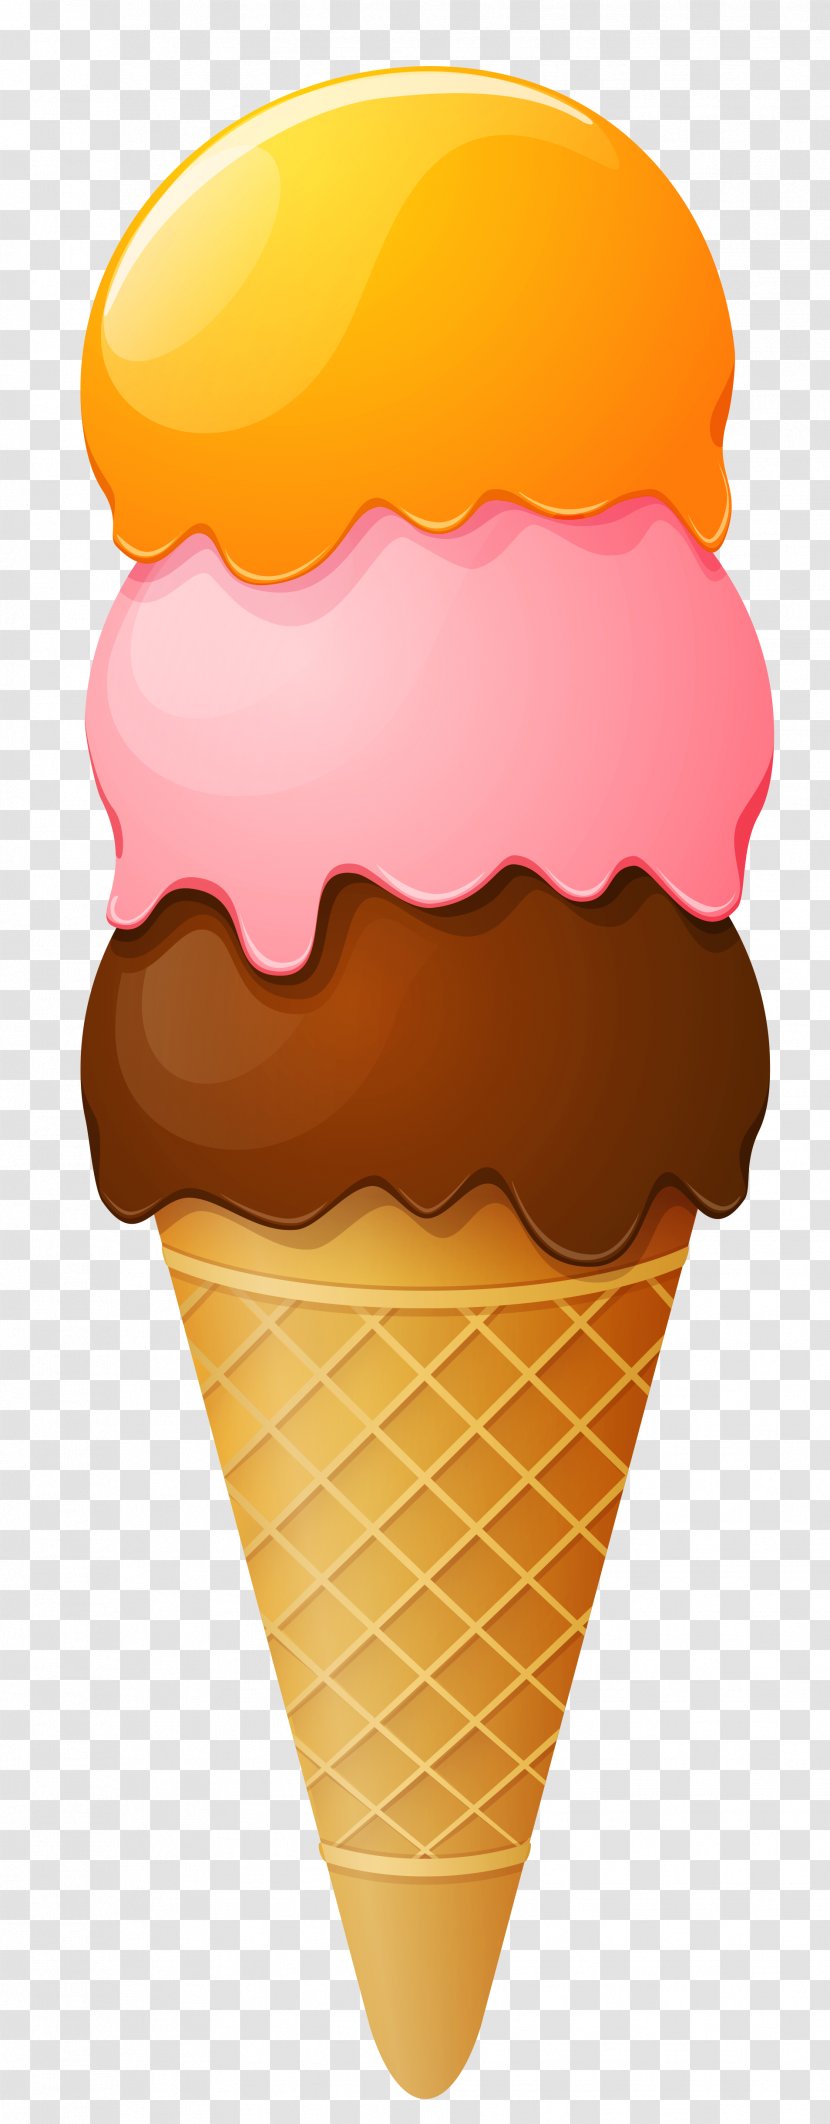 Ice Cream Cone Sundae Clip Art - Social - Image Transparent PNG